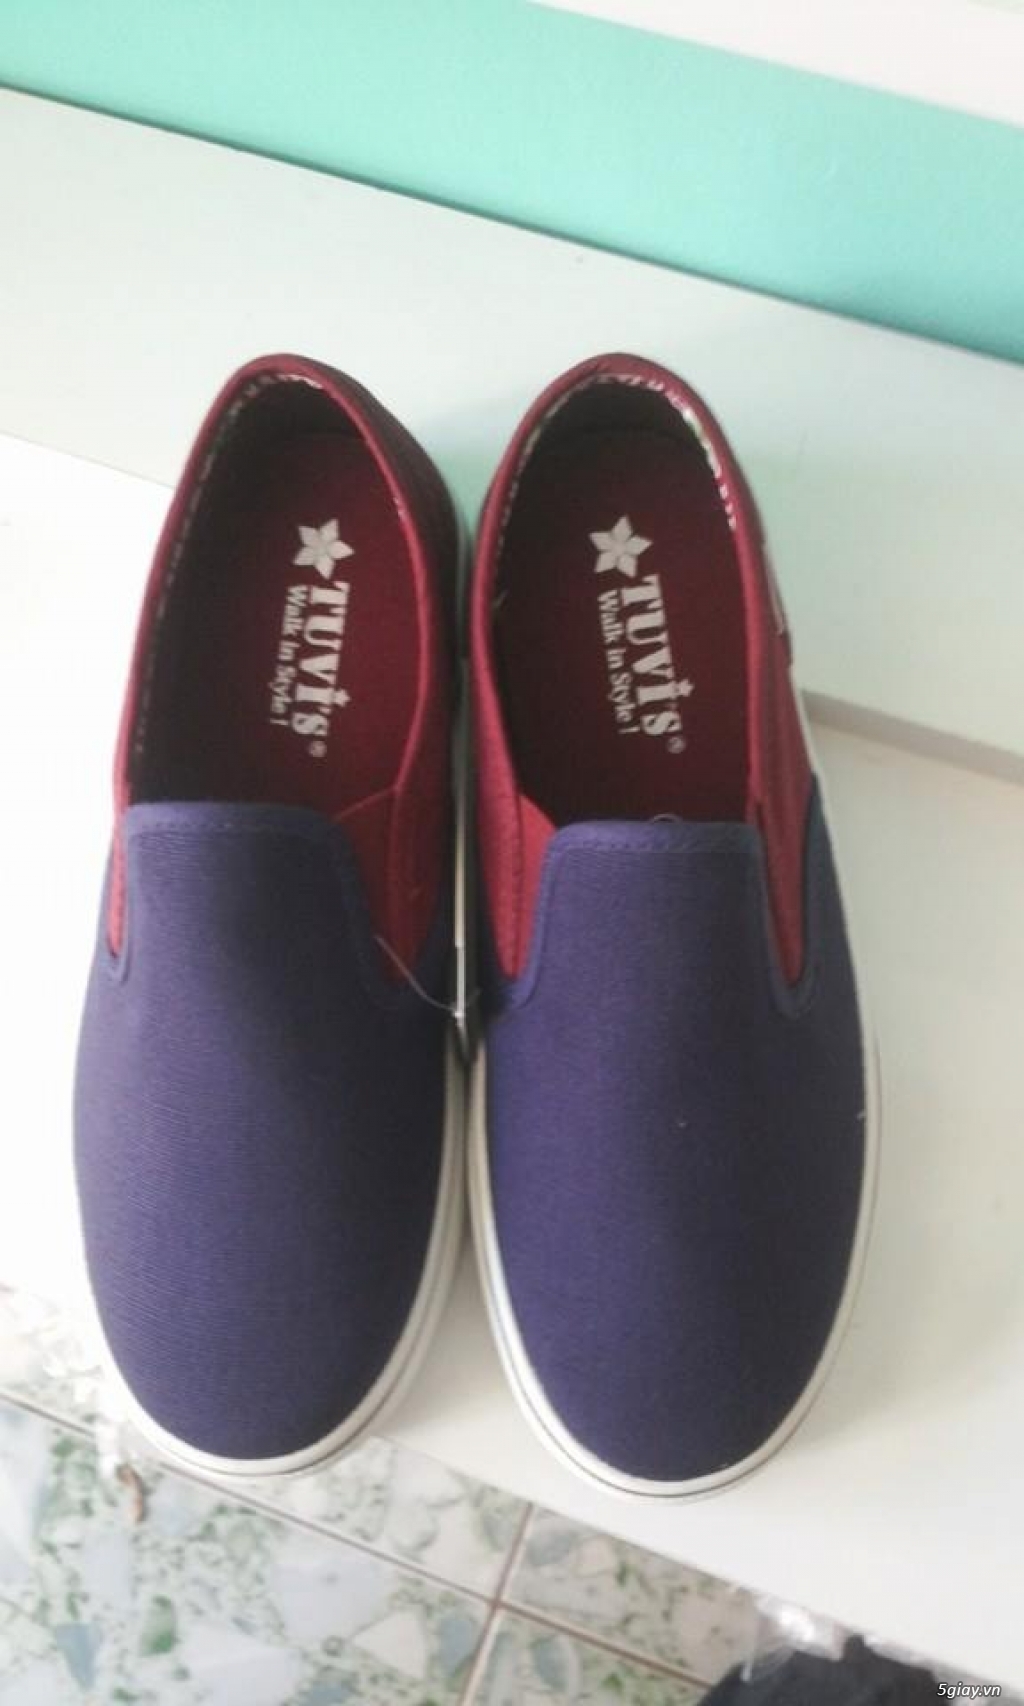 Giày TUVI'S chính hãng - Chuyên cung cấp sỉ & lẻ giày vải búp bê, slip on,dây hiệu Tuvi's... giá rẻ - 39